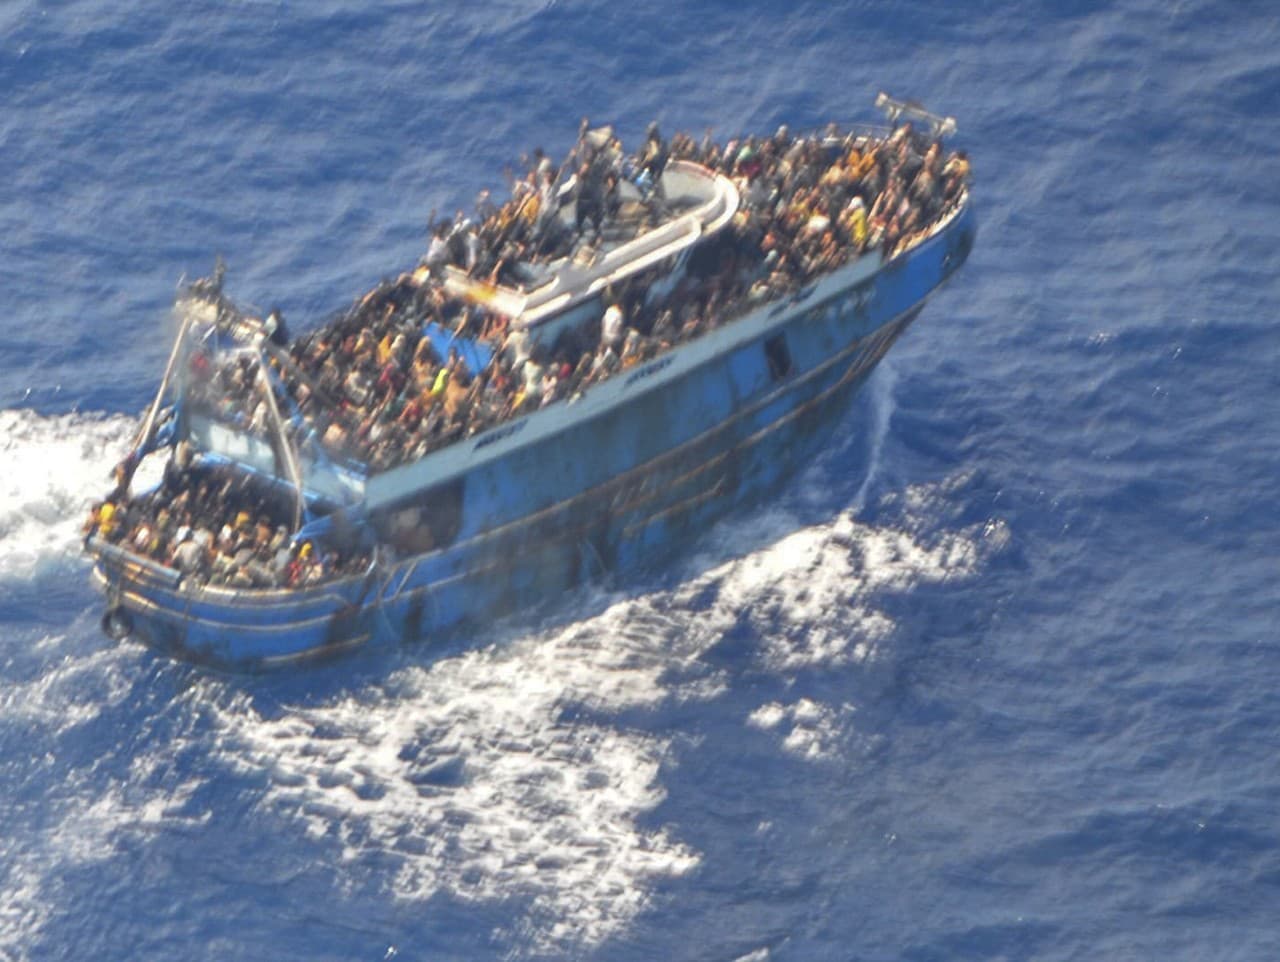 Rybárska loď bola preťažená migrantmi.